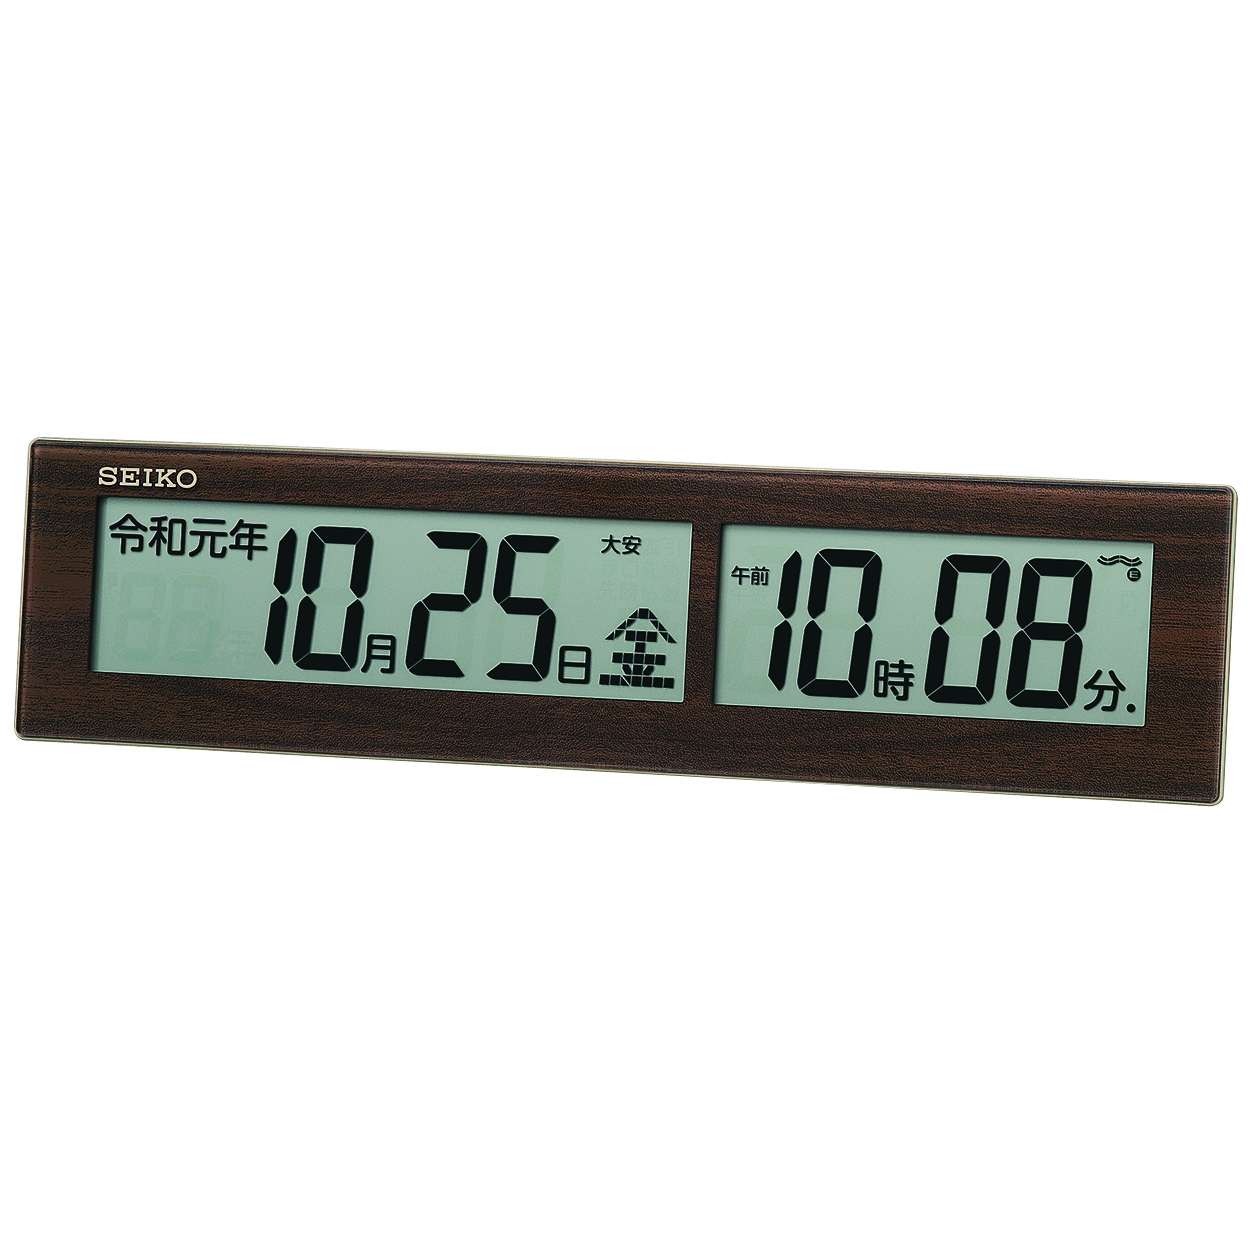 新元号「令和」を表示するデジタル時計2機種を発売｜セイコークロック株式会社のプレスリリース